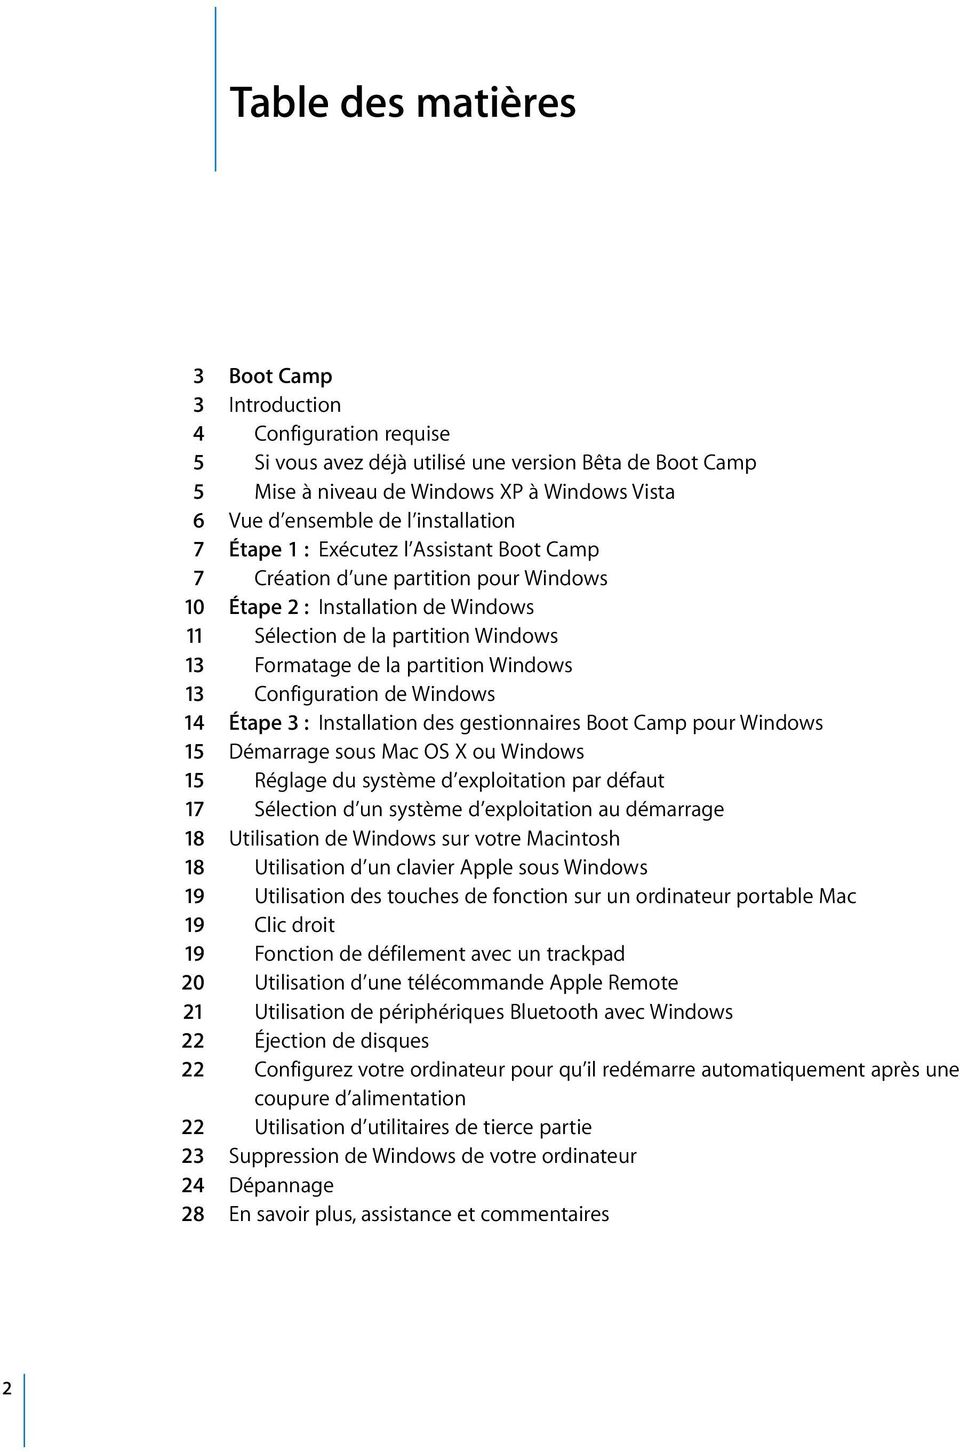 Windows 13 Configuration de Windows 14 Étape 3 : Installation des gestionnaires Boot Camp pour Windows 15 Démarrage sous Mac OS X ou Windows 15 Réglage du système d exploitation par défaut 17